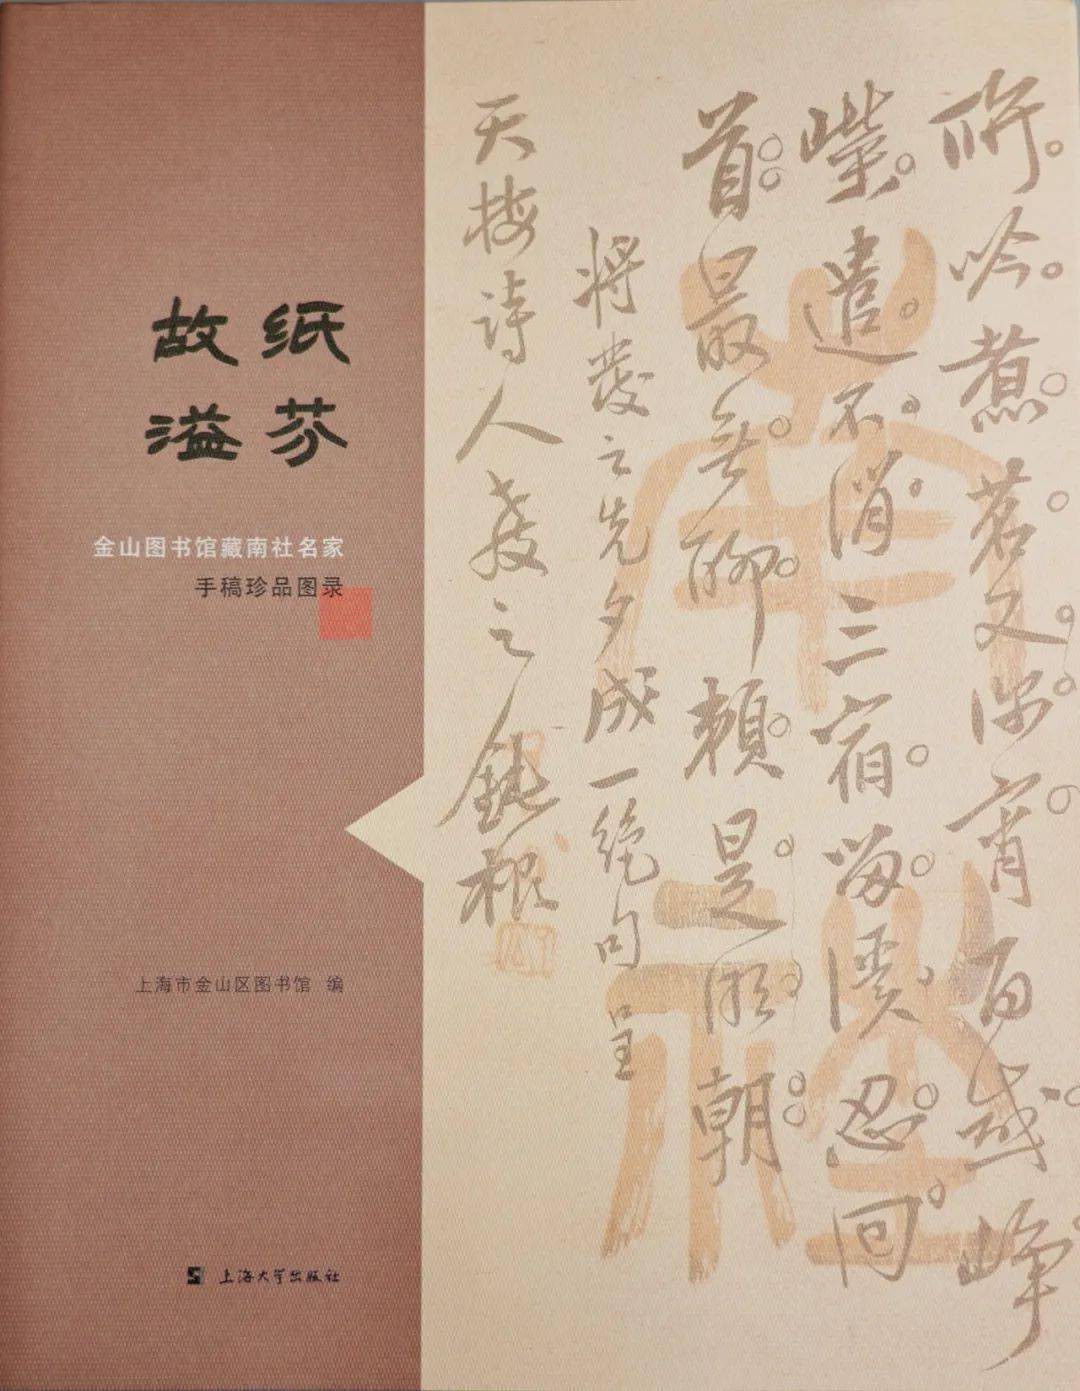 故纸溢芬 金山图书馆藏南社名家手稿珍品图录